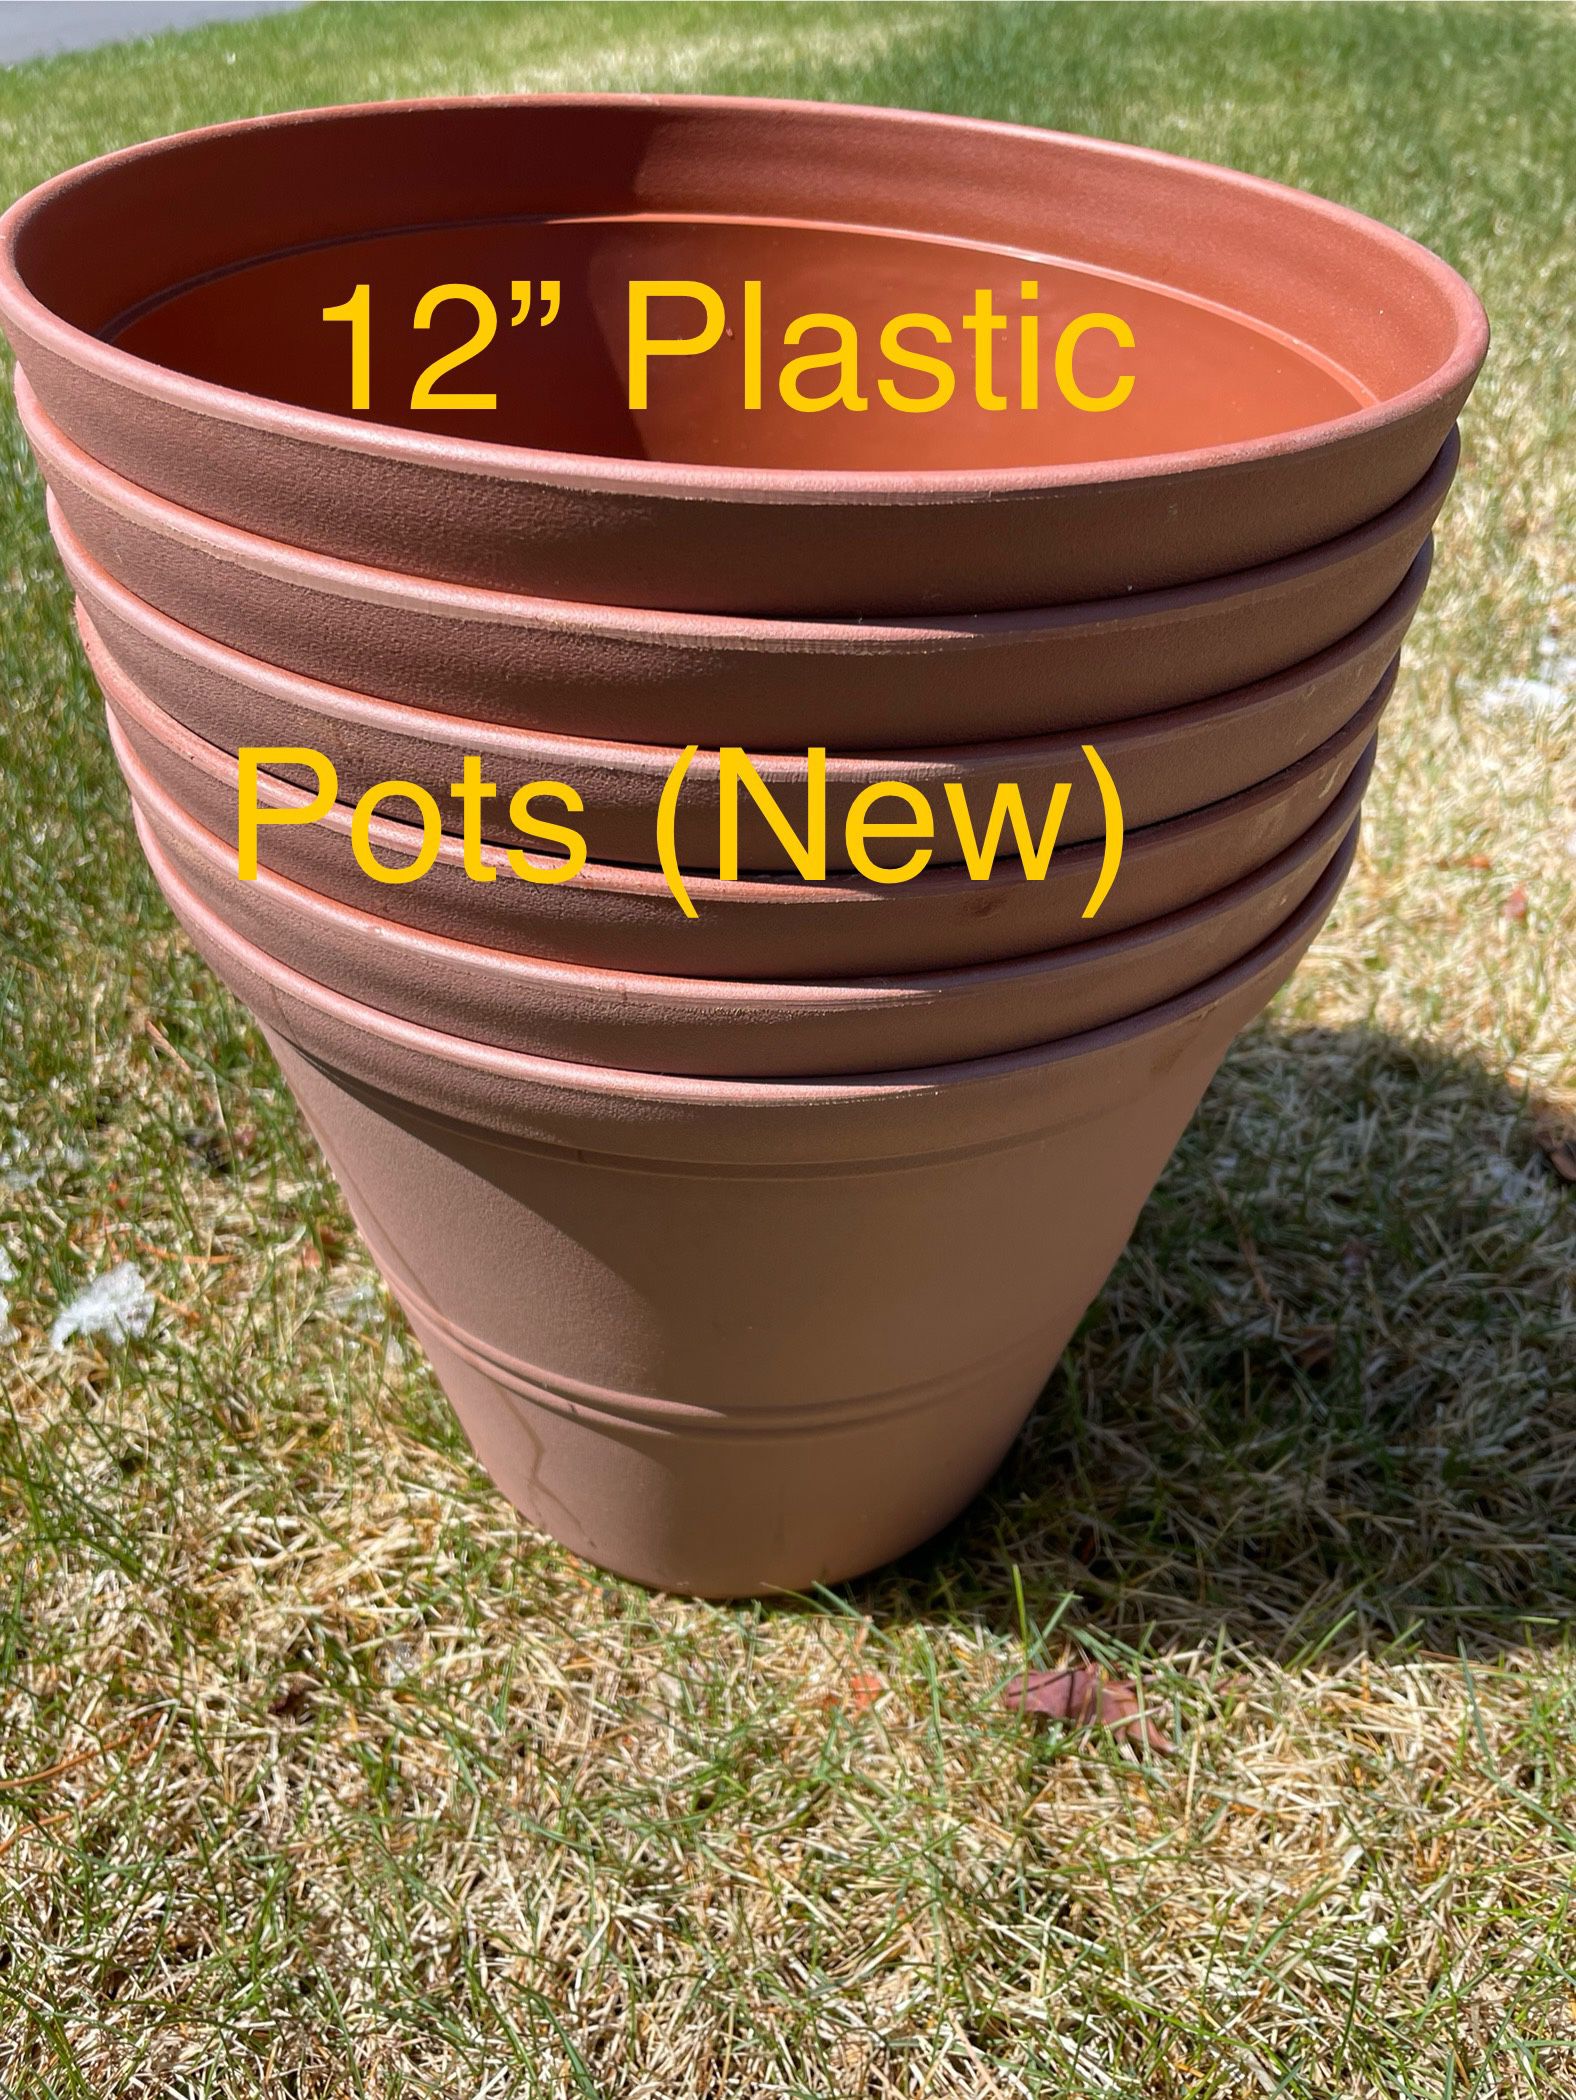 6 New Plastic Planters